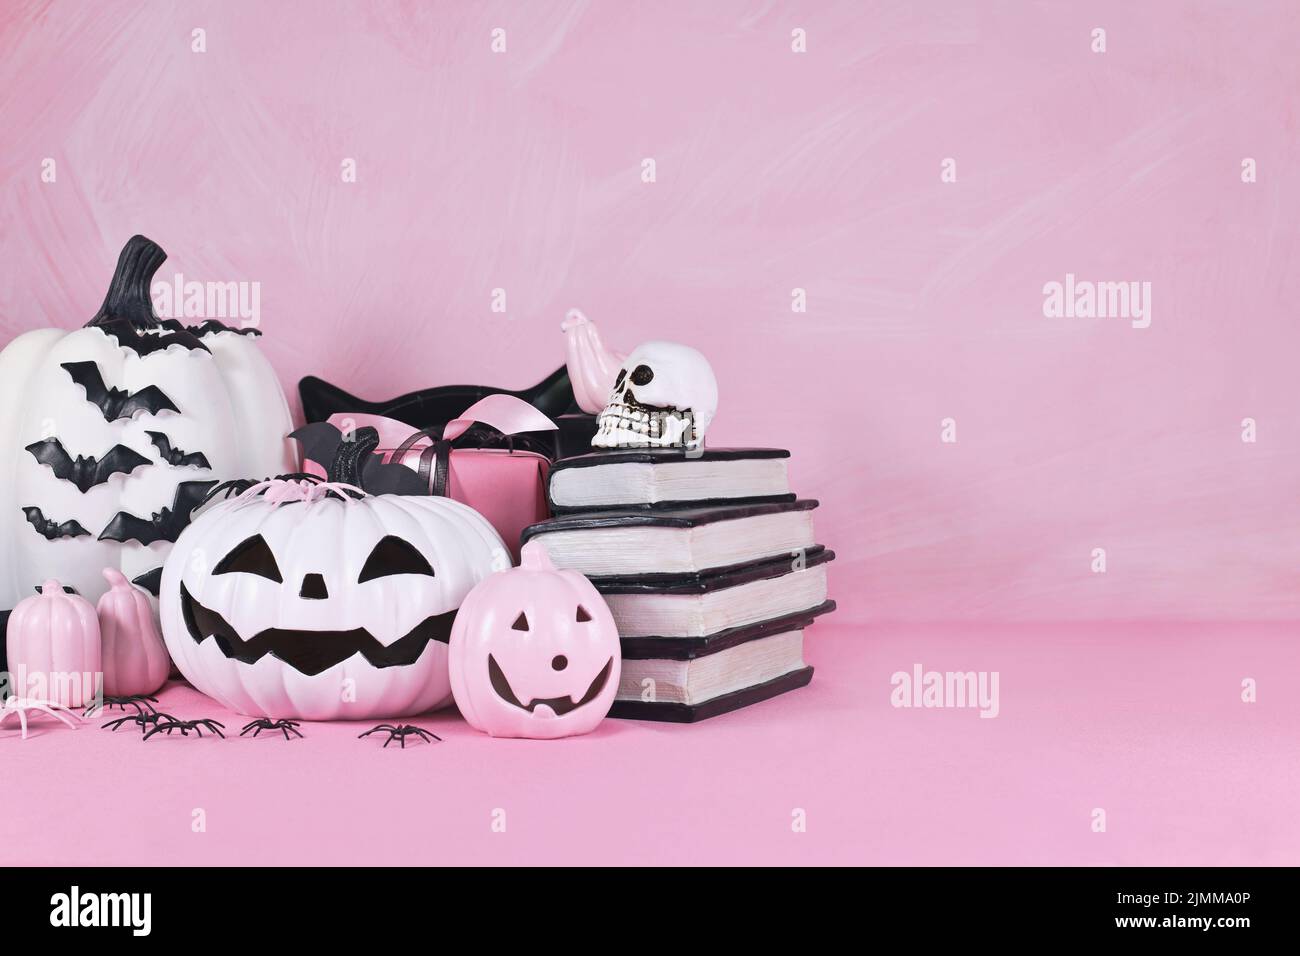 Decoración de Halloween rosa con calabazas en blanco y negro, libros con hechizos y arañas con espacio para copias Foto de stock